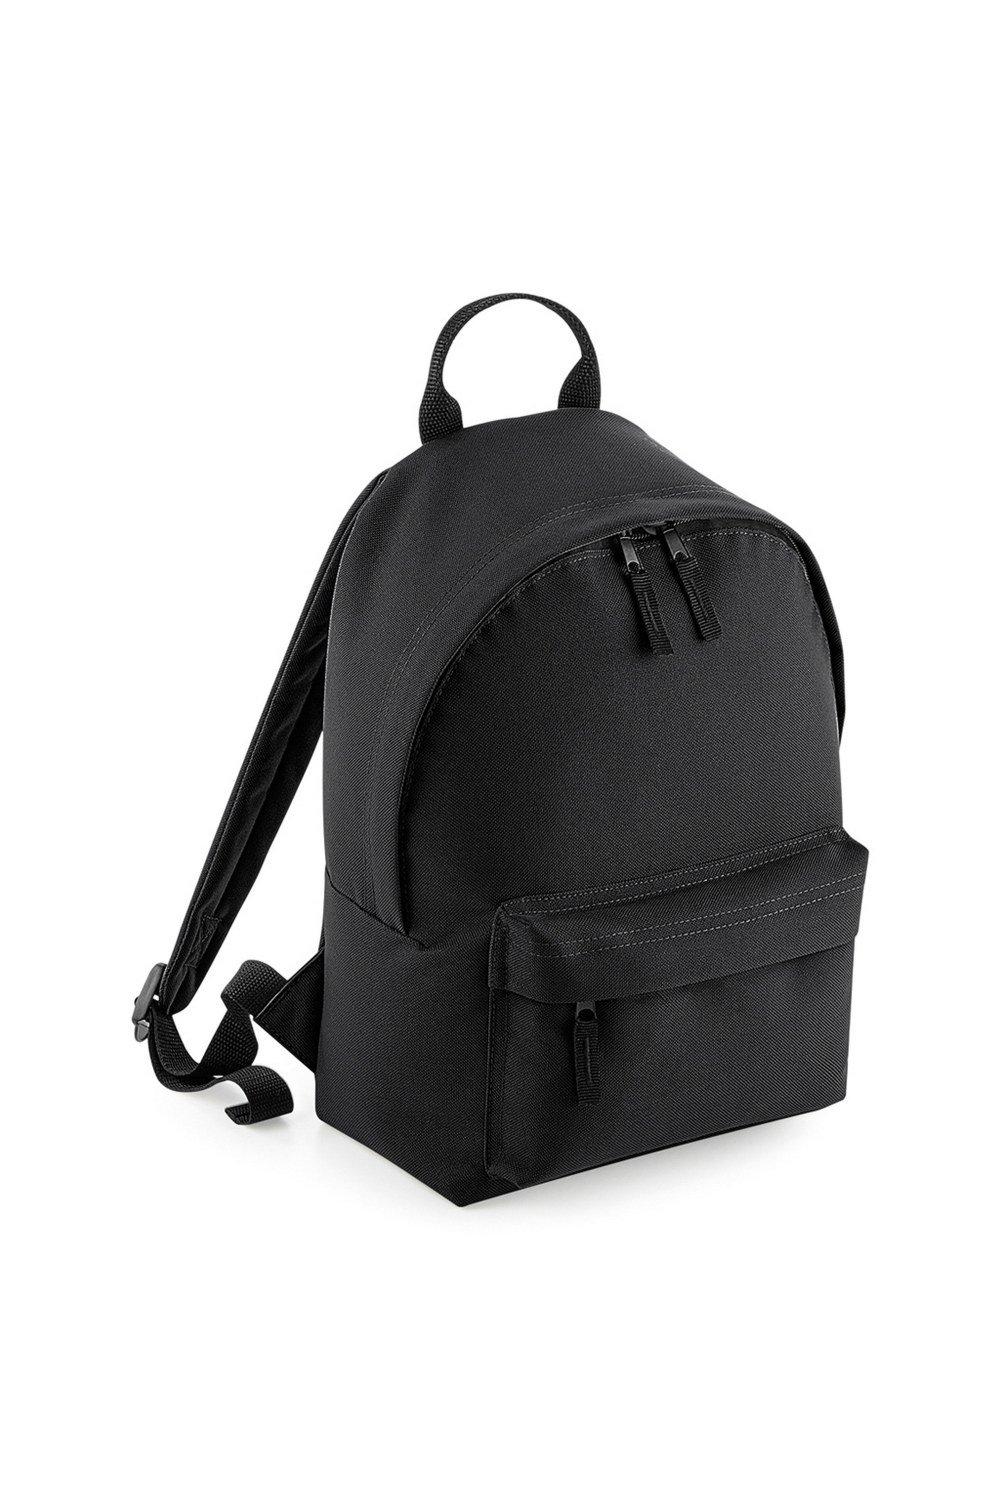 Мини-модный рюкзак Bagbase, черный